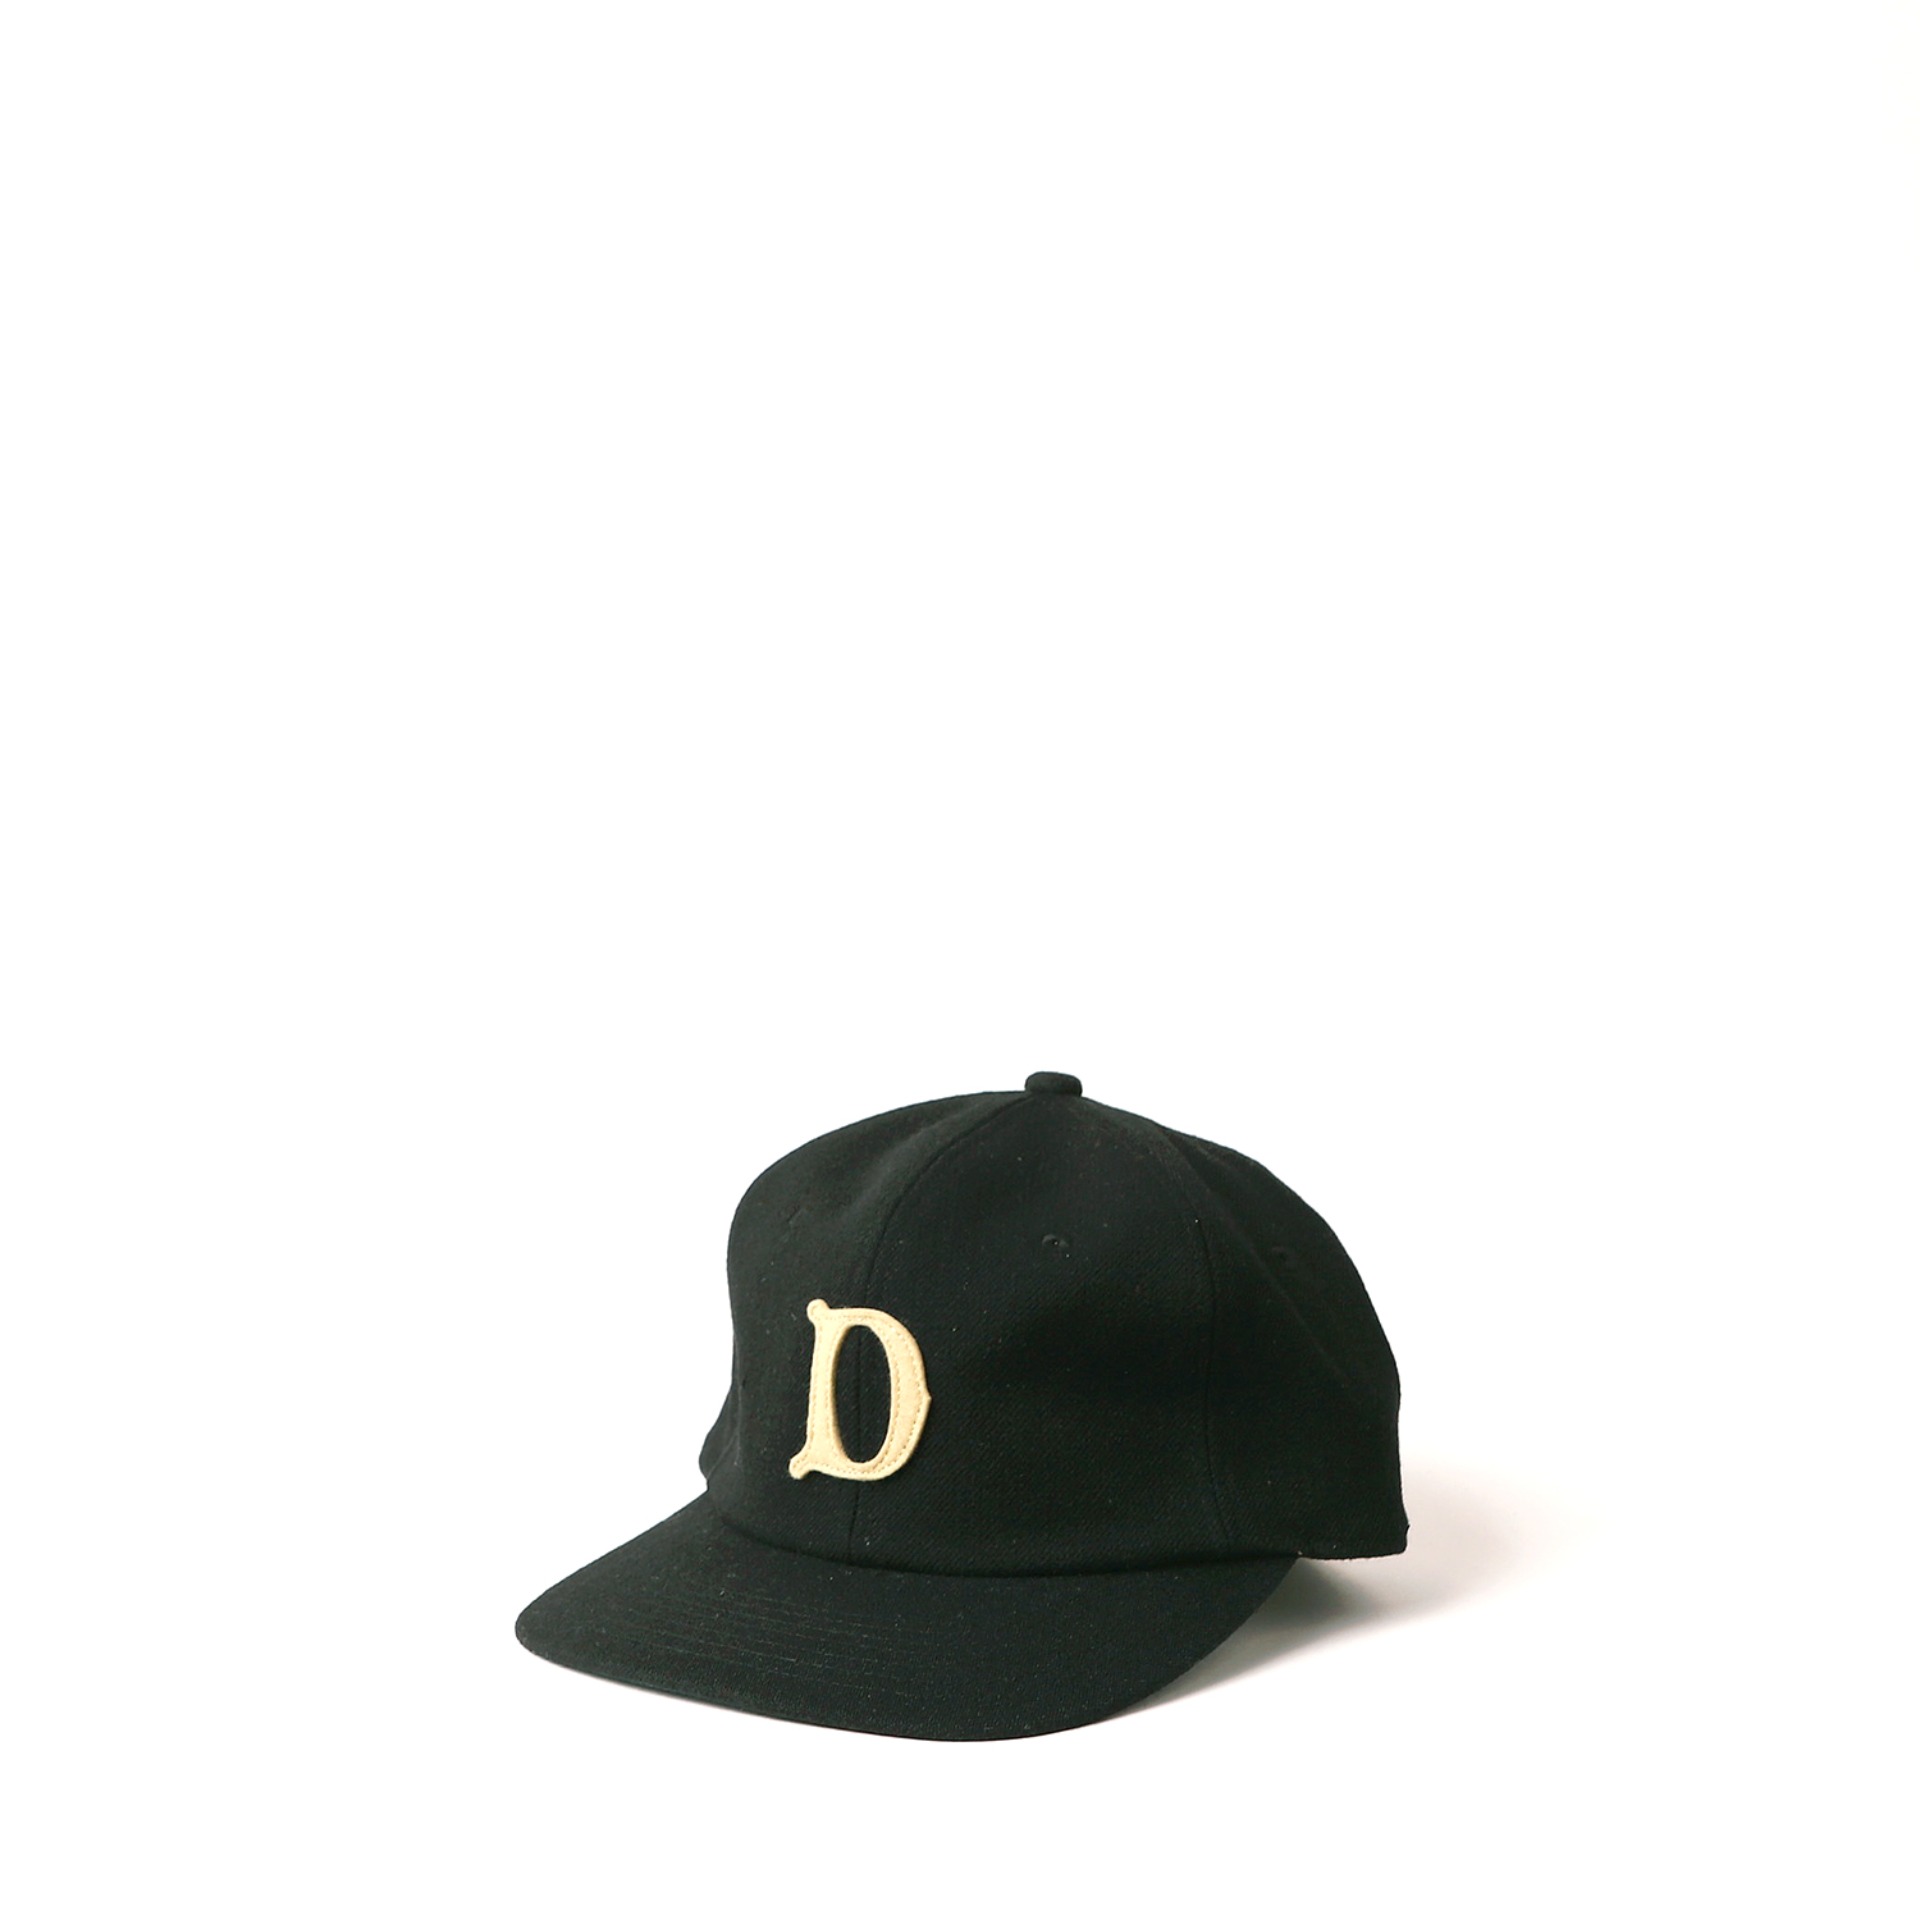 BASEBALL CAP (Black)